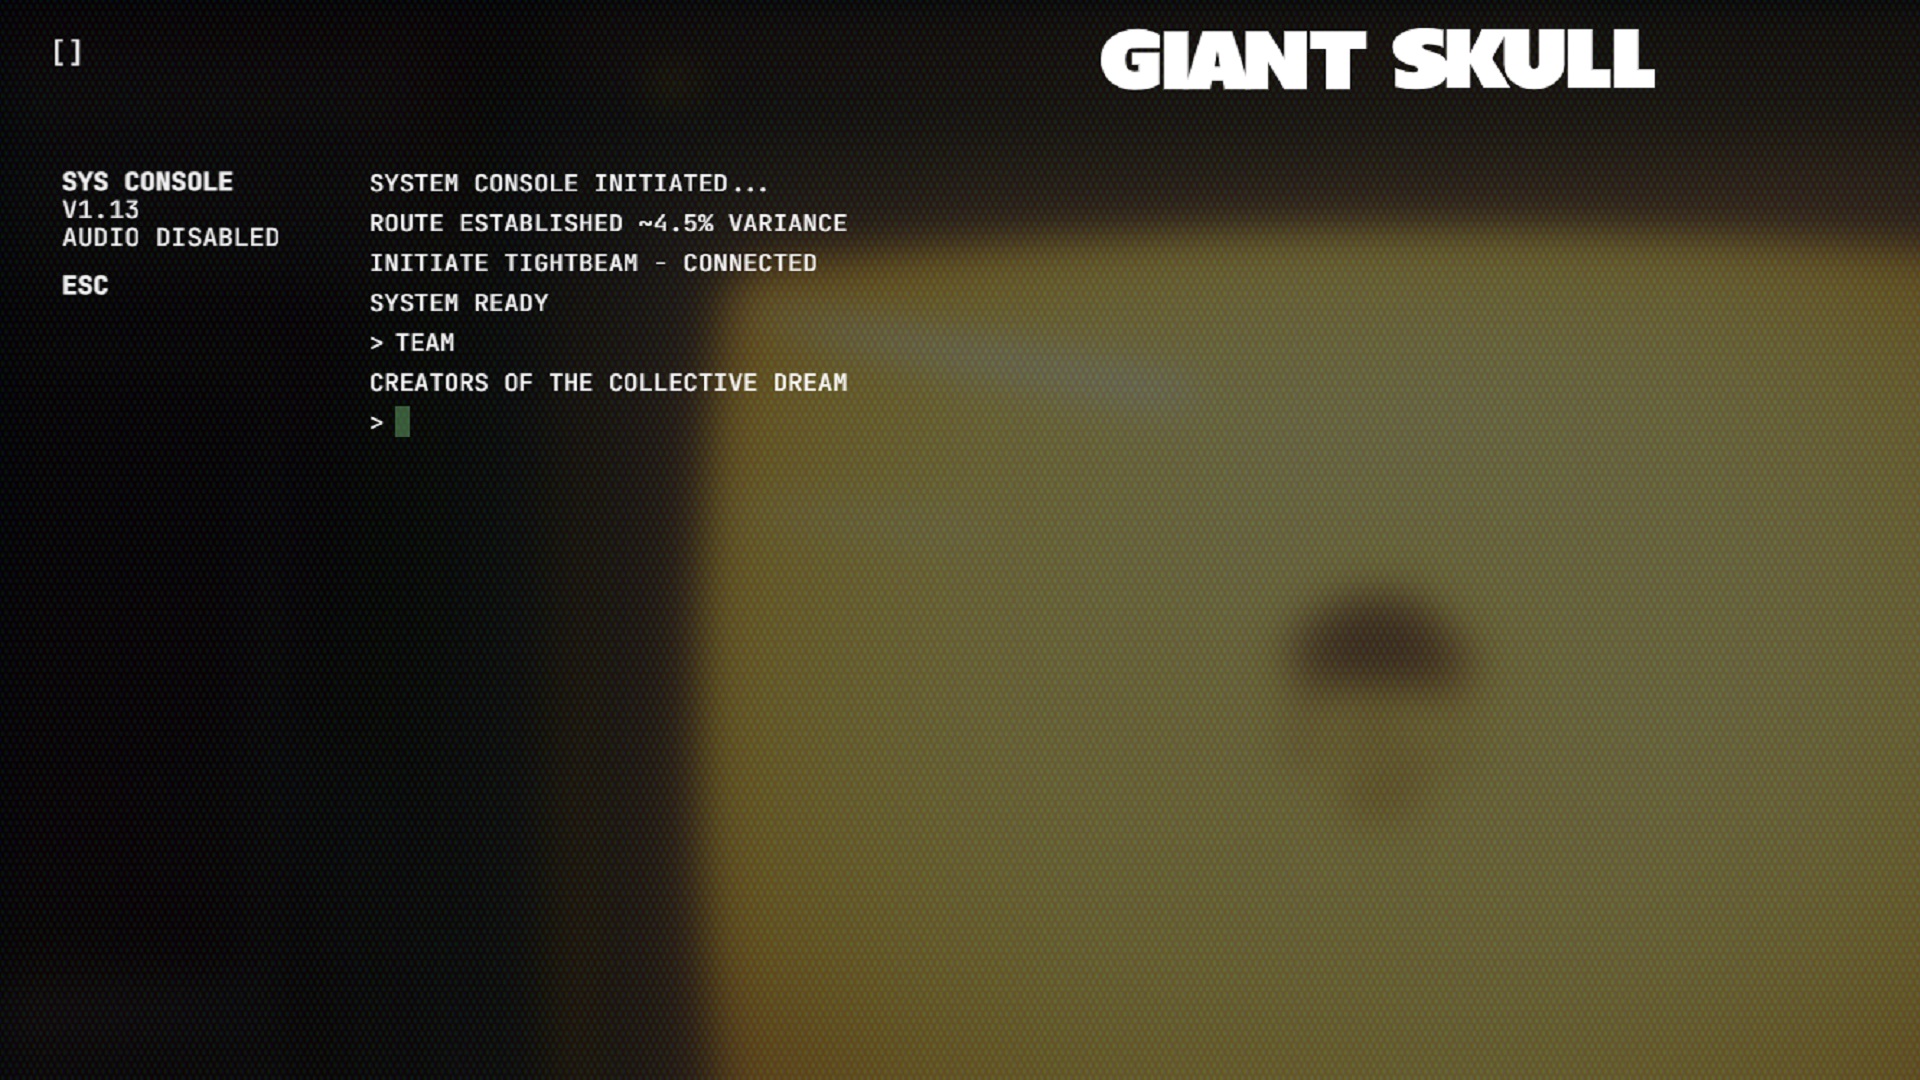 Giant Skull weboldal